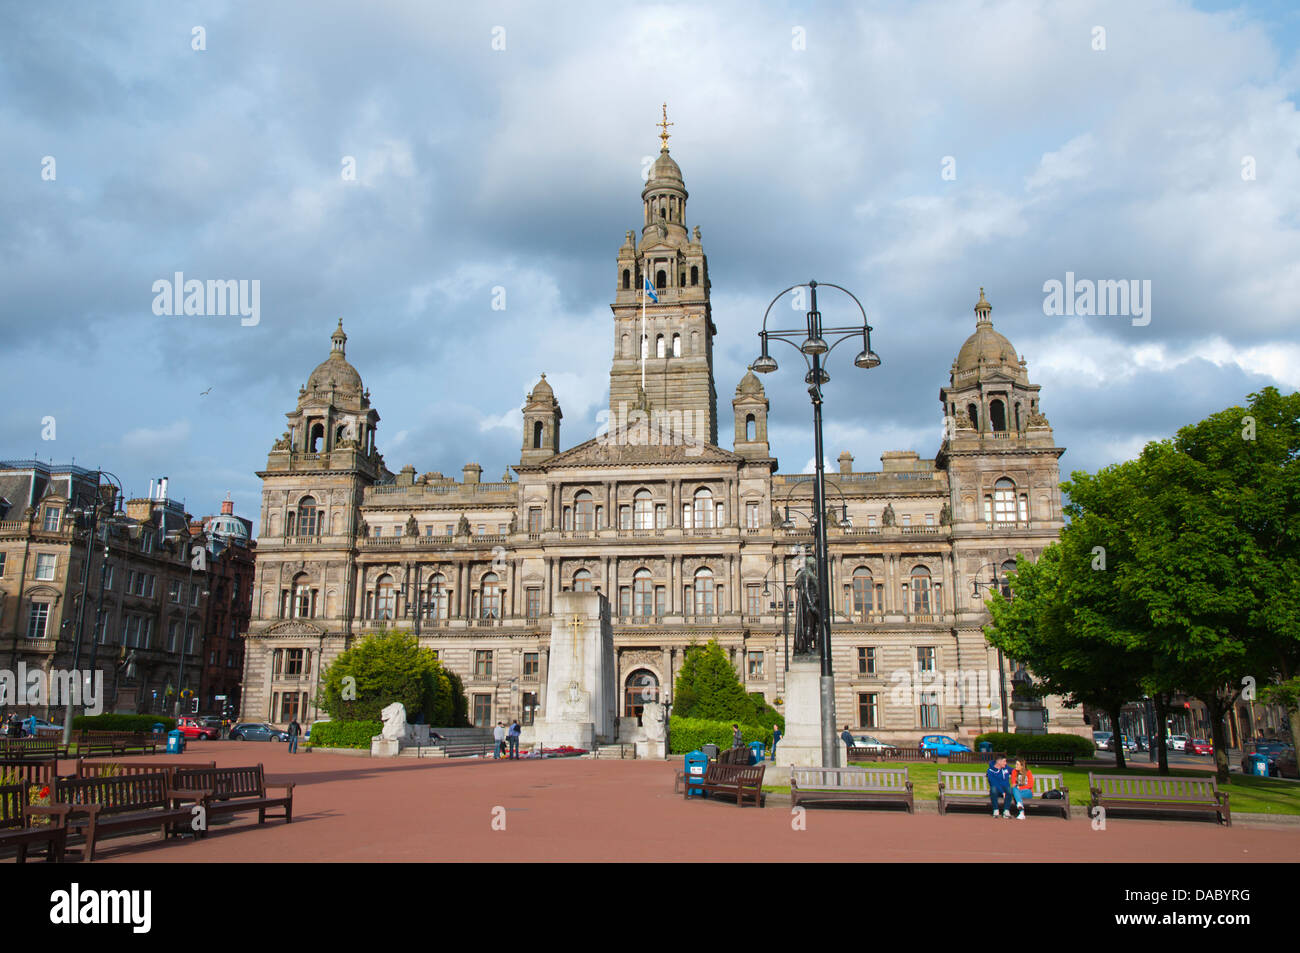 Viktorianischen Ära Glasgow City Chambers Rathaus (1888) George Square Glasgow Schottland Großbritannien UK Mitteleuropa Stockfoto